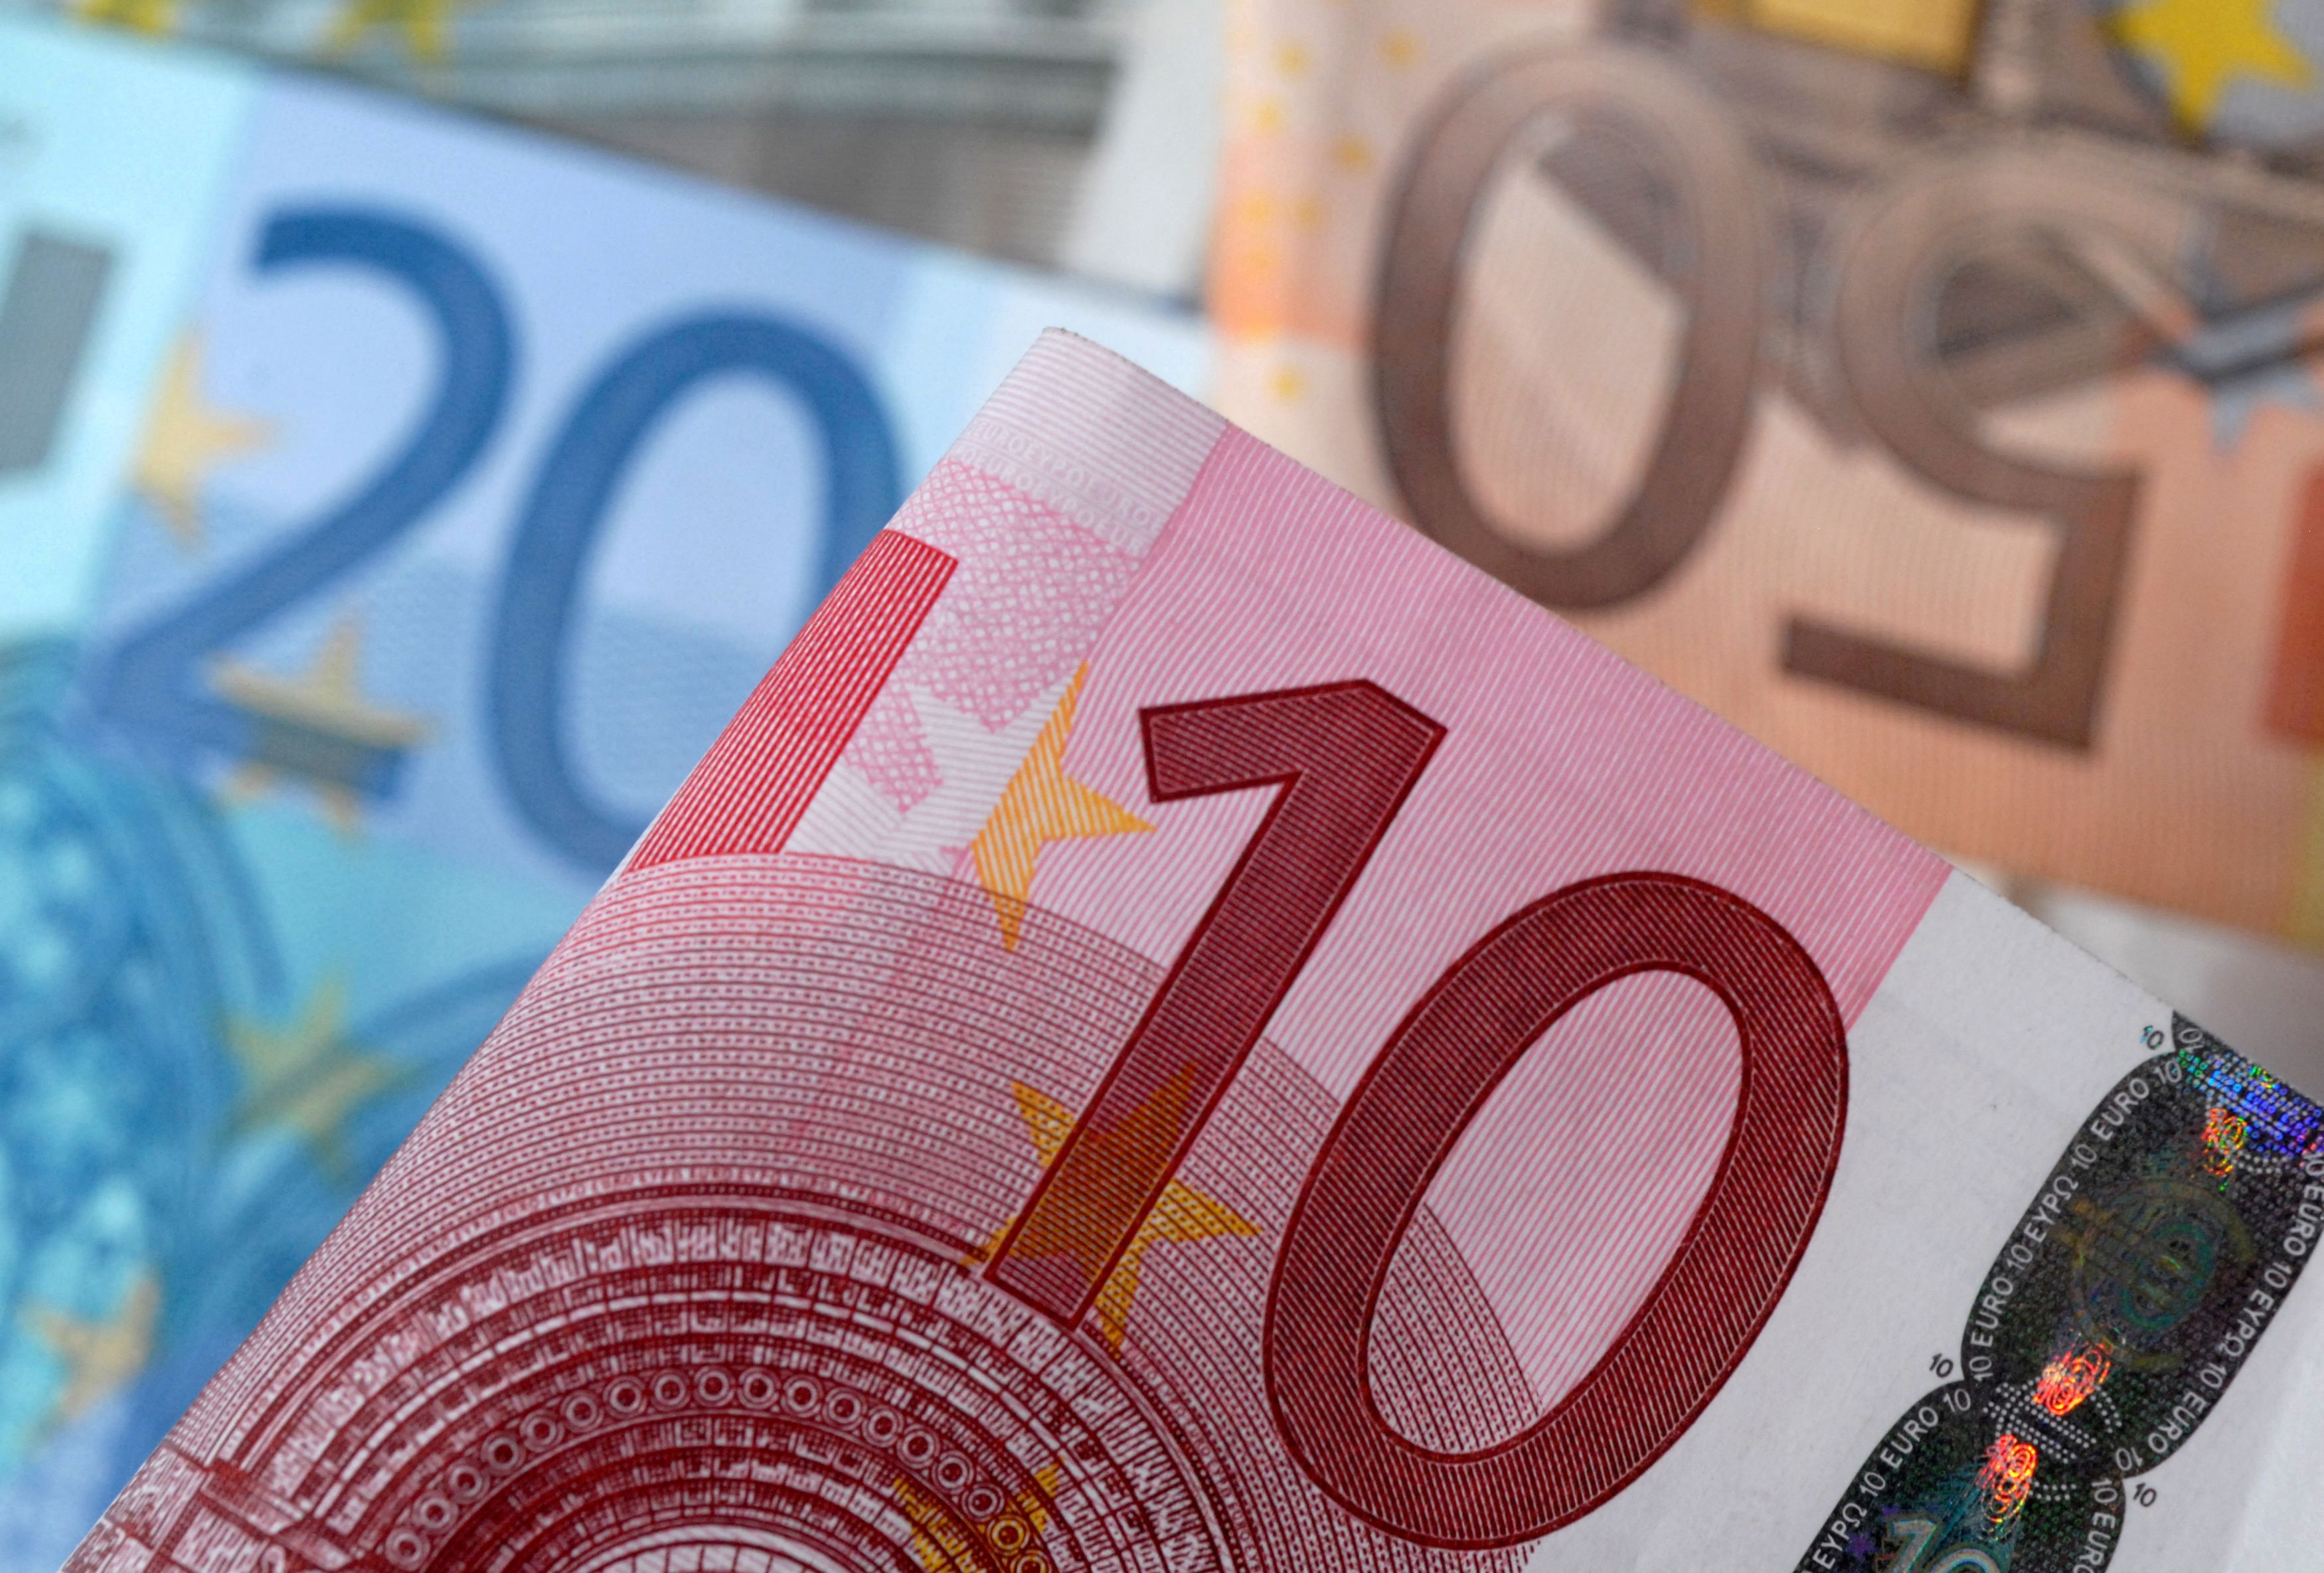 La Bundesbank s'attend à de nouvelles hausses de taux « significatives »